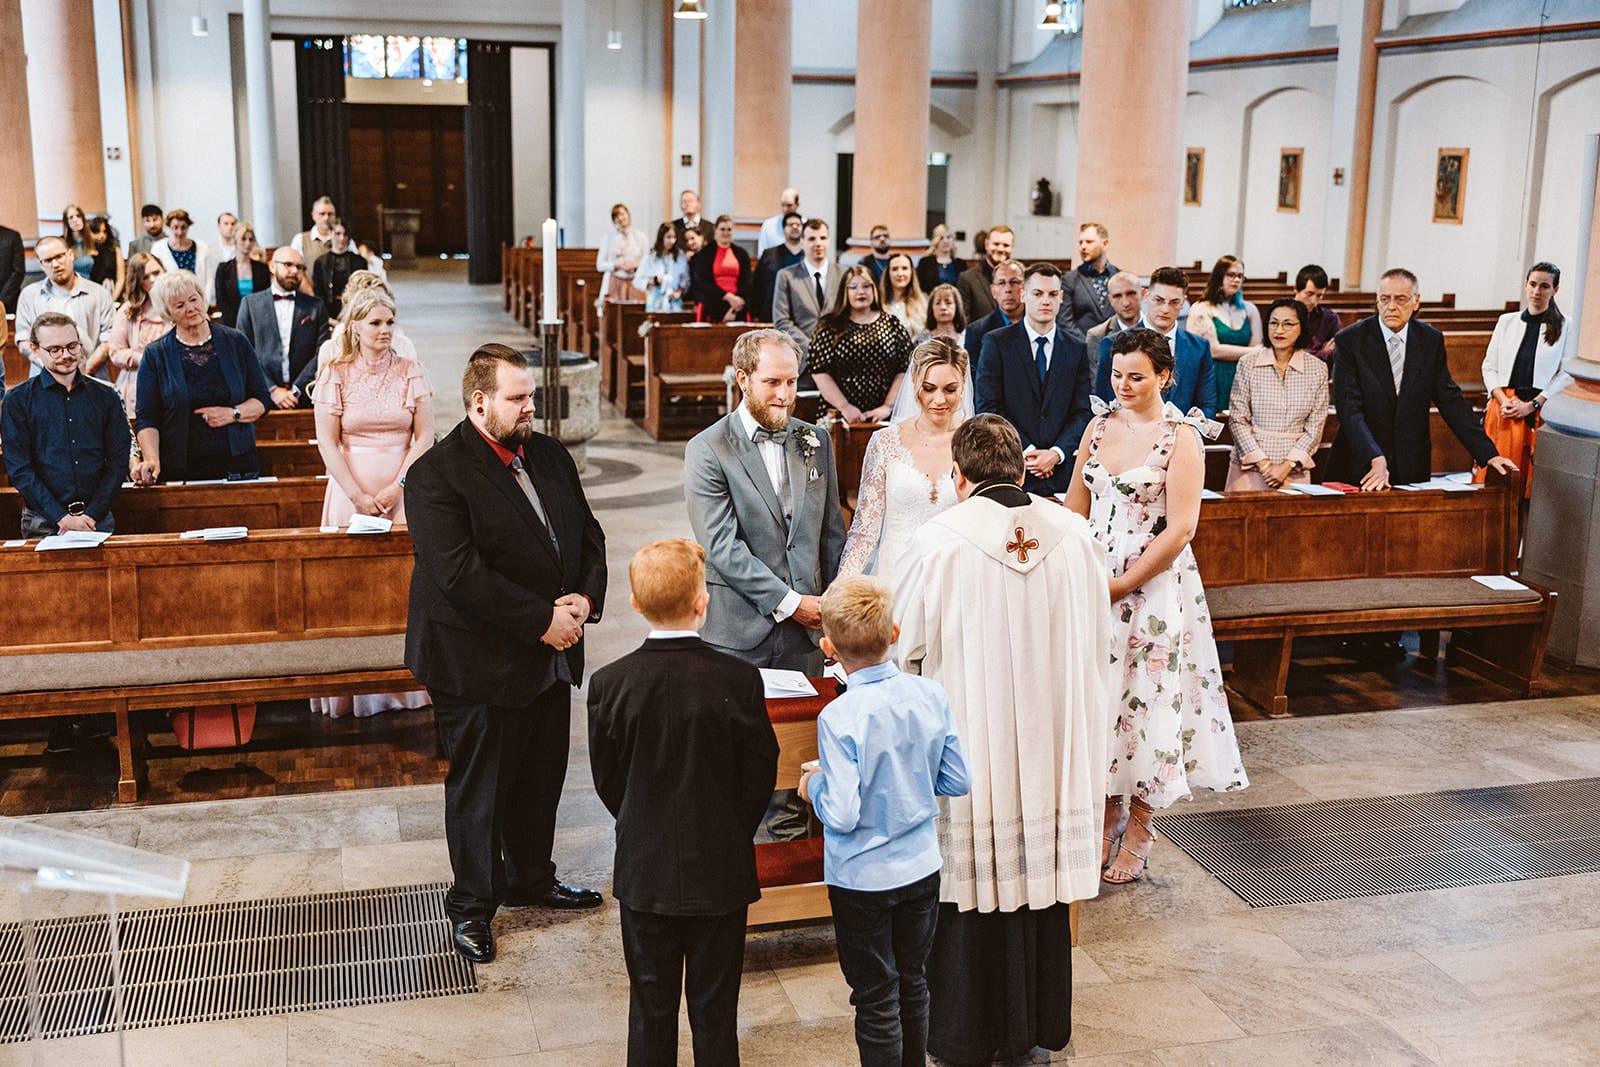 St. Mariä Empfängnis Essen Hochzeitsfotograf - Gesamte Hochzeitsgäste in der Kirche